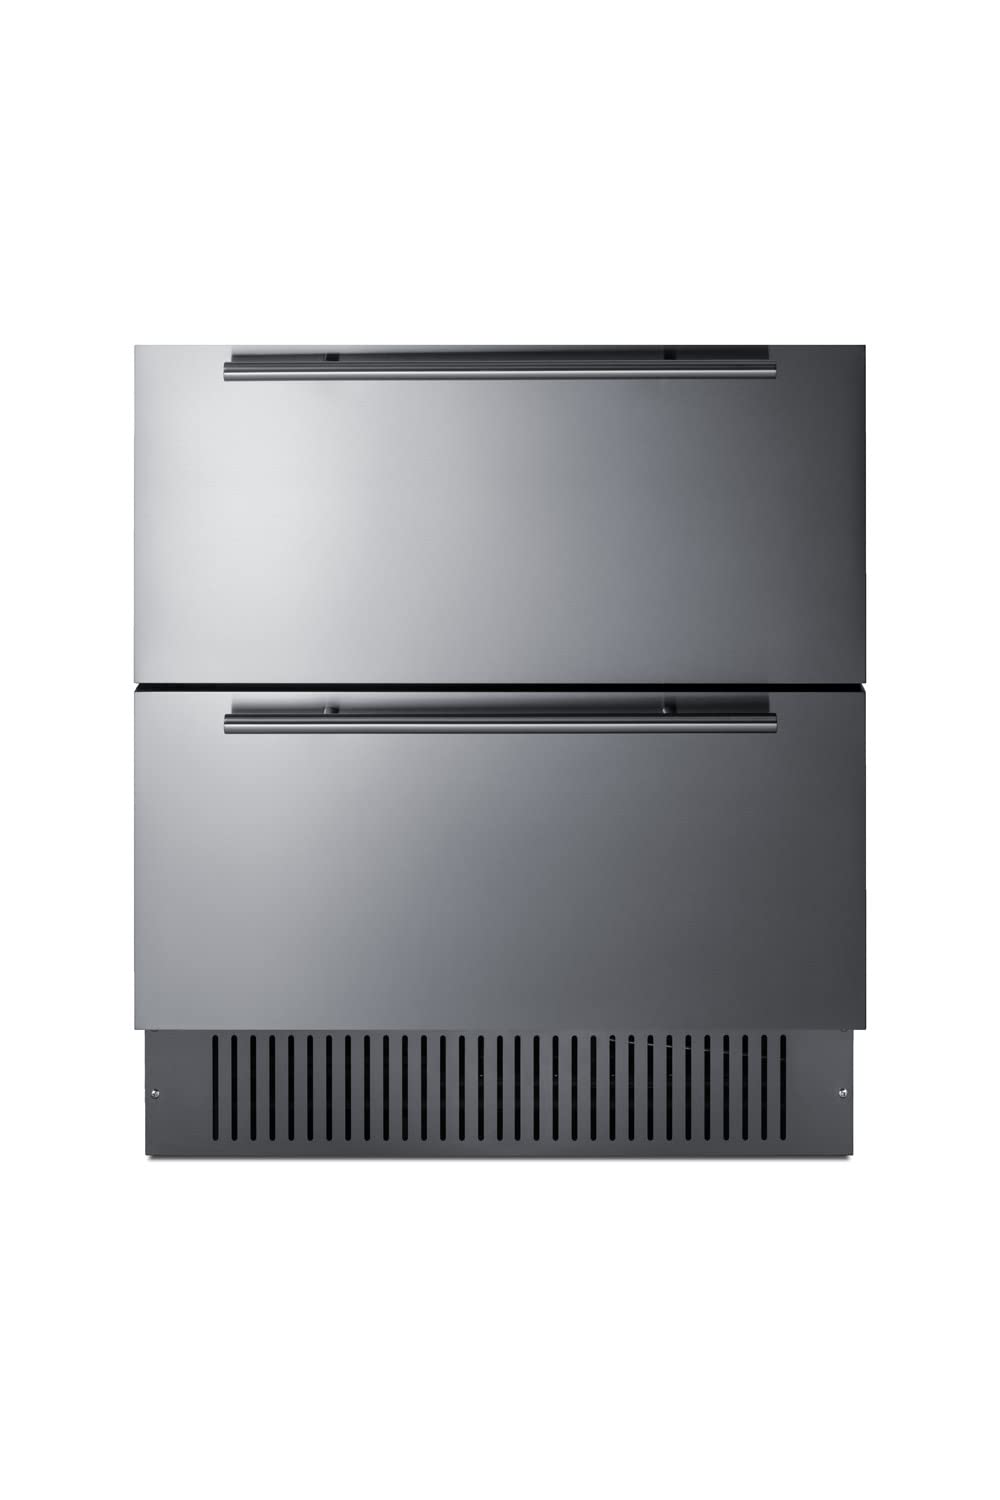 Summit Appliance SPR3032D 30